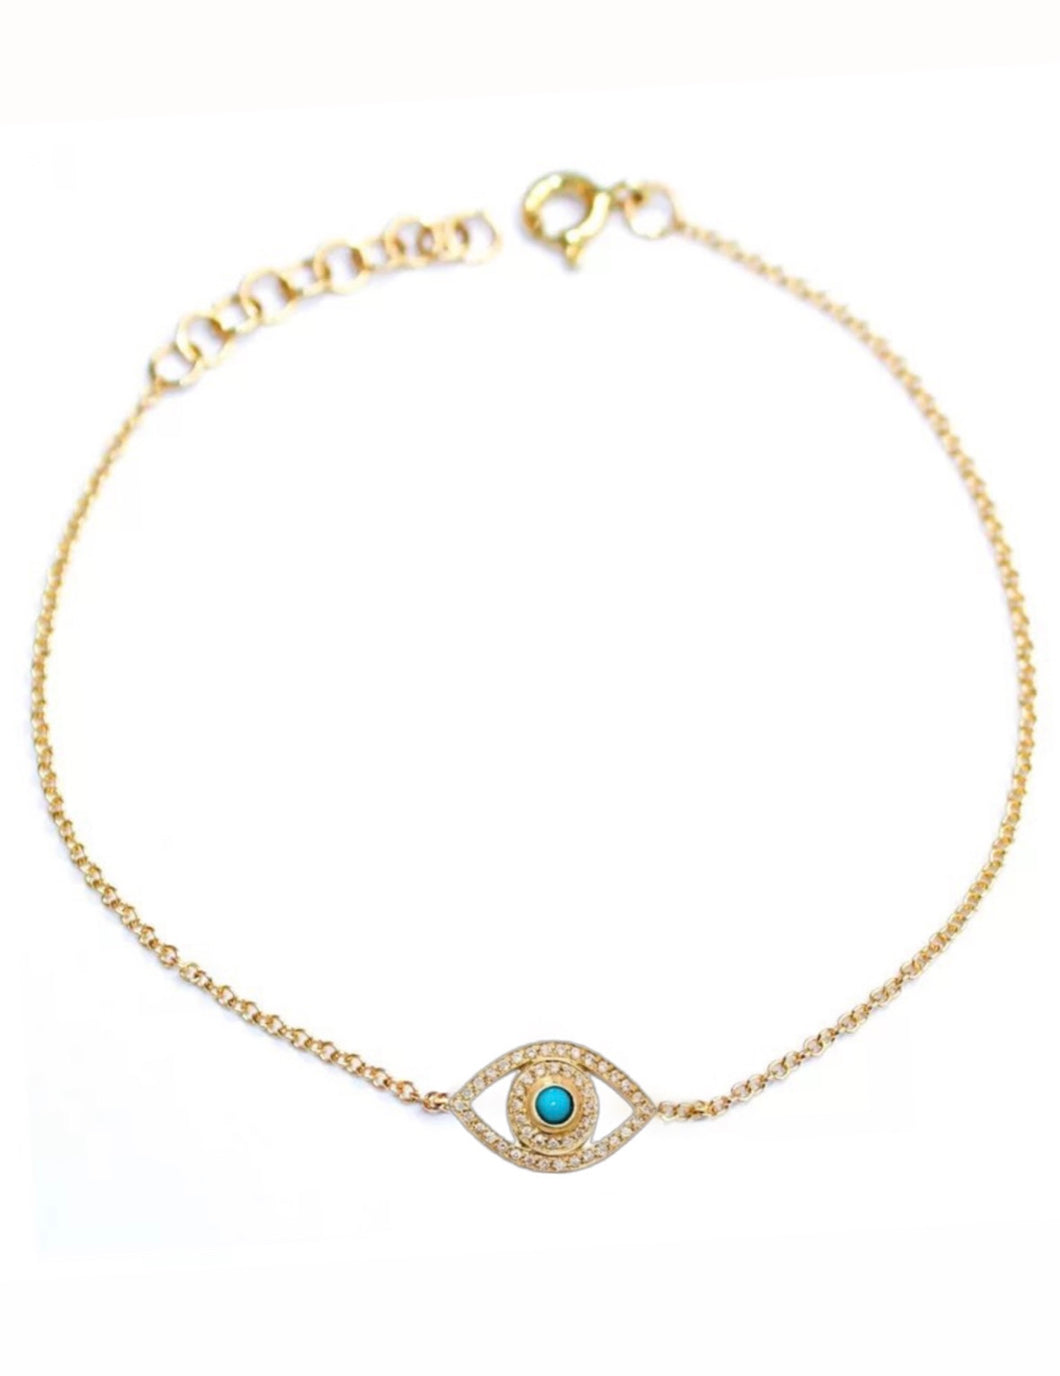 Athena gold evil eye bracelet